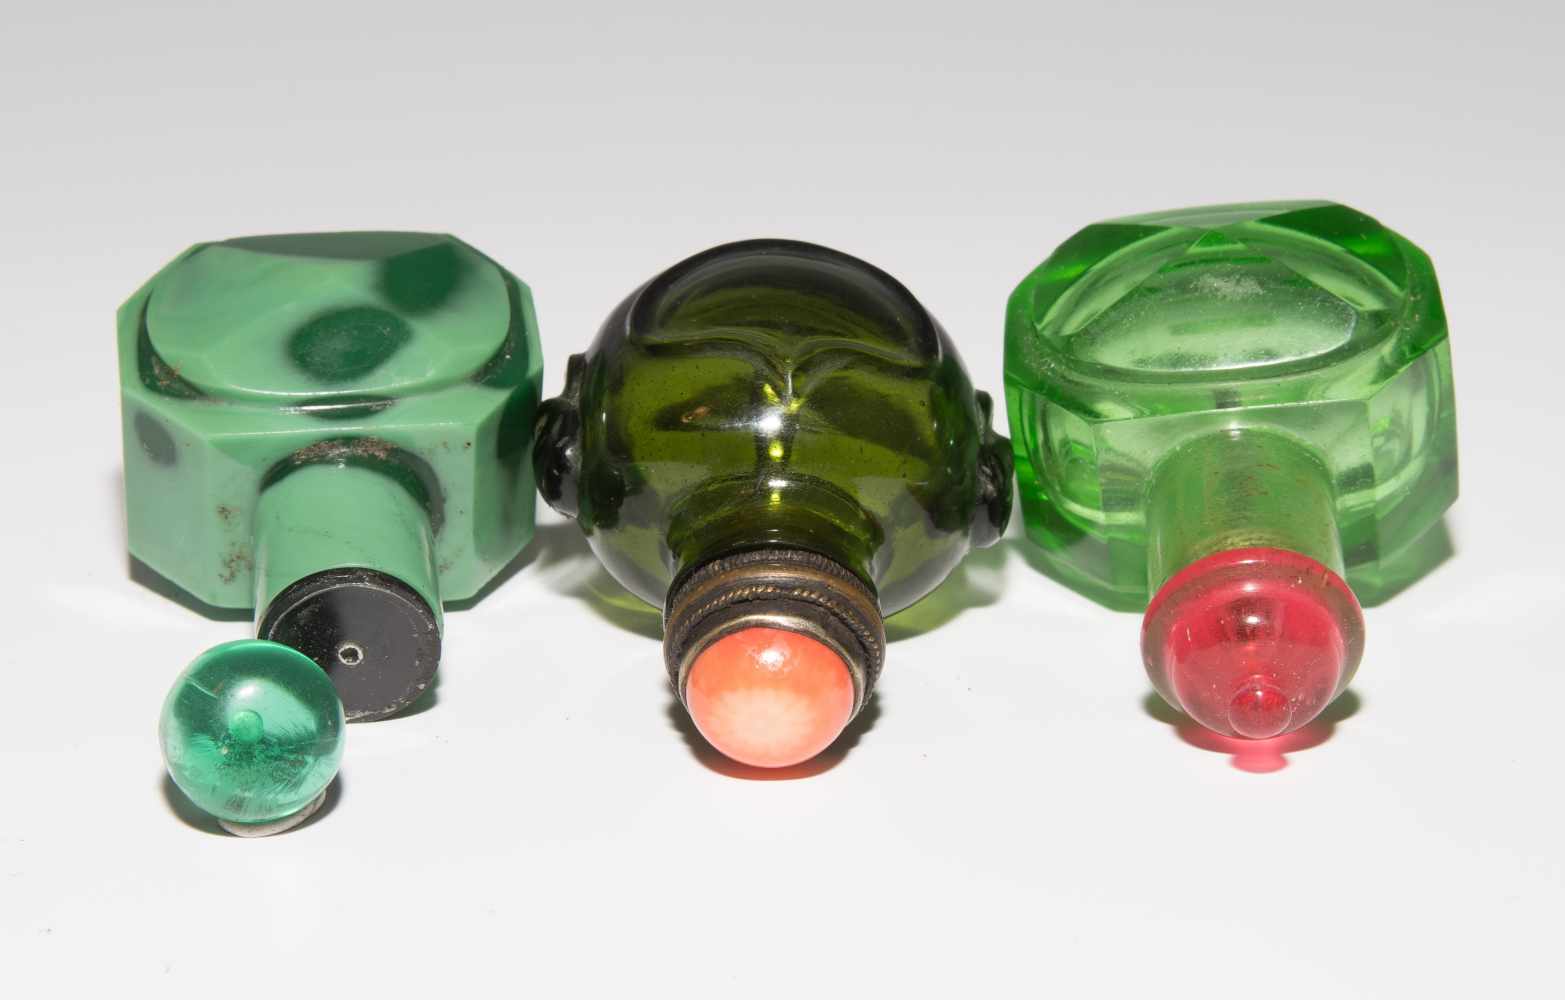 8 Snuff BottlesChina. Drei kleine Snuff Bottles aus transparentem Glas in verschiedenen Grüntonen; - Image 18 of 22